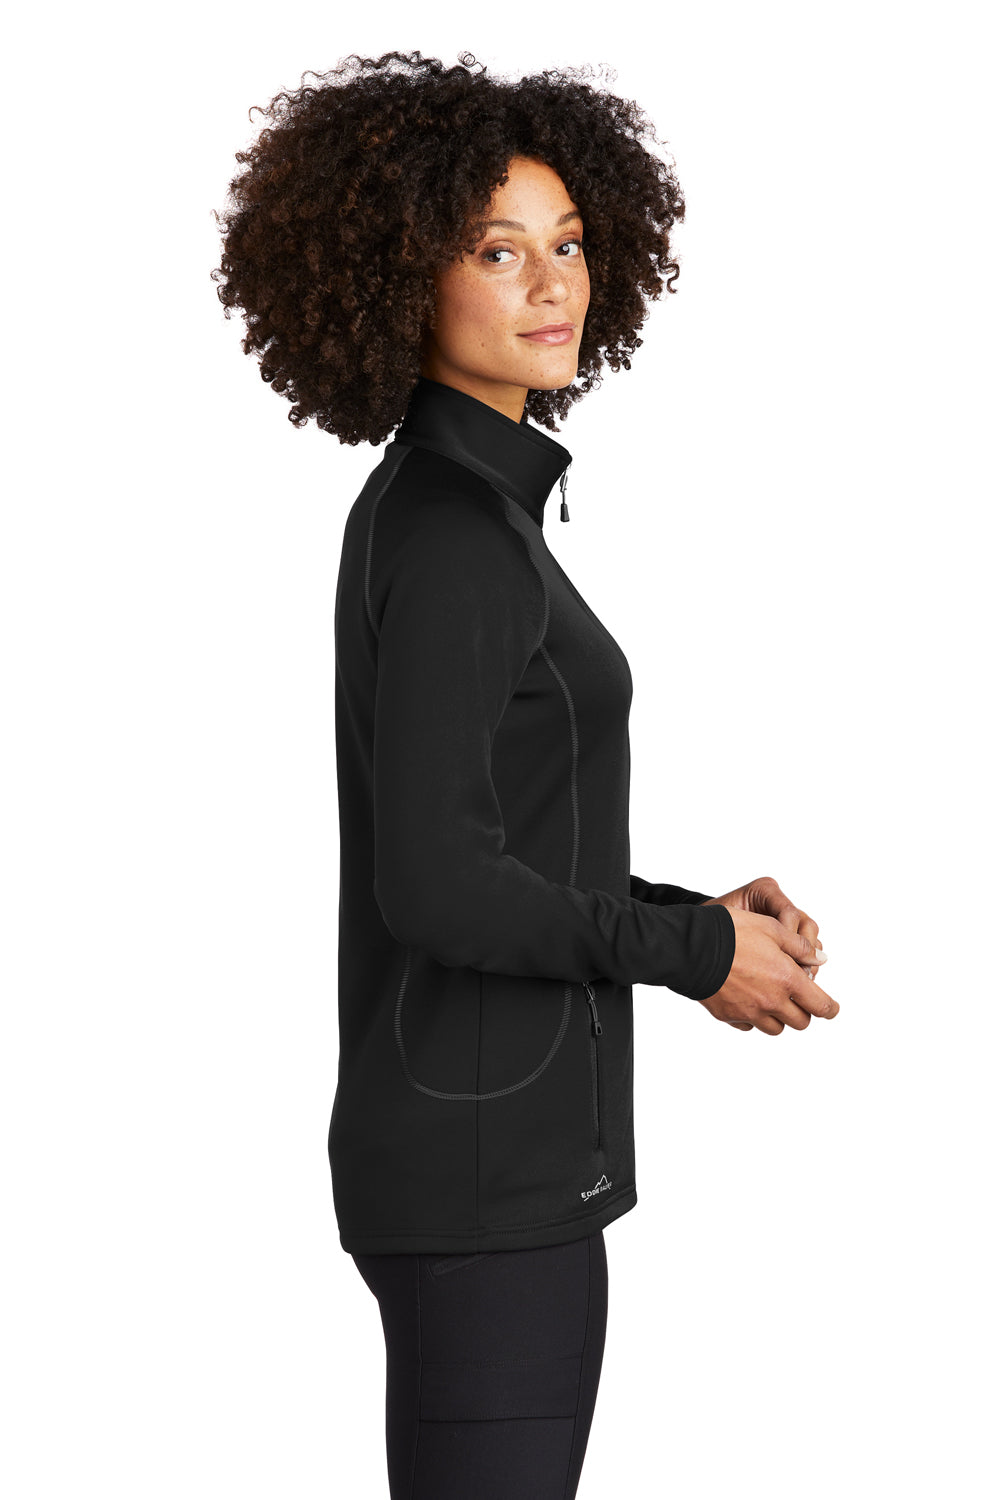 Eddie Bauer EB247 Womens Fleece Full Zip Jacket Black Model Side